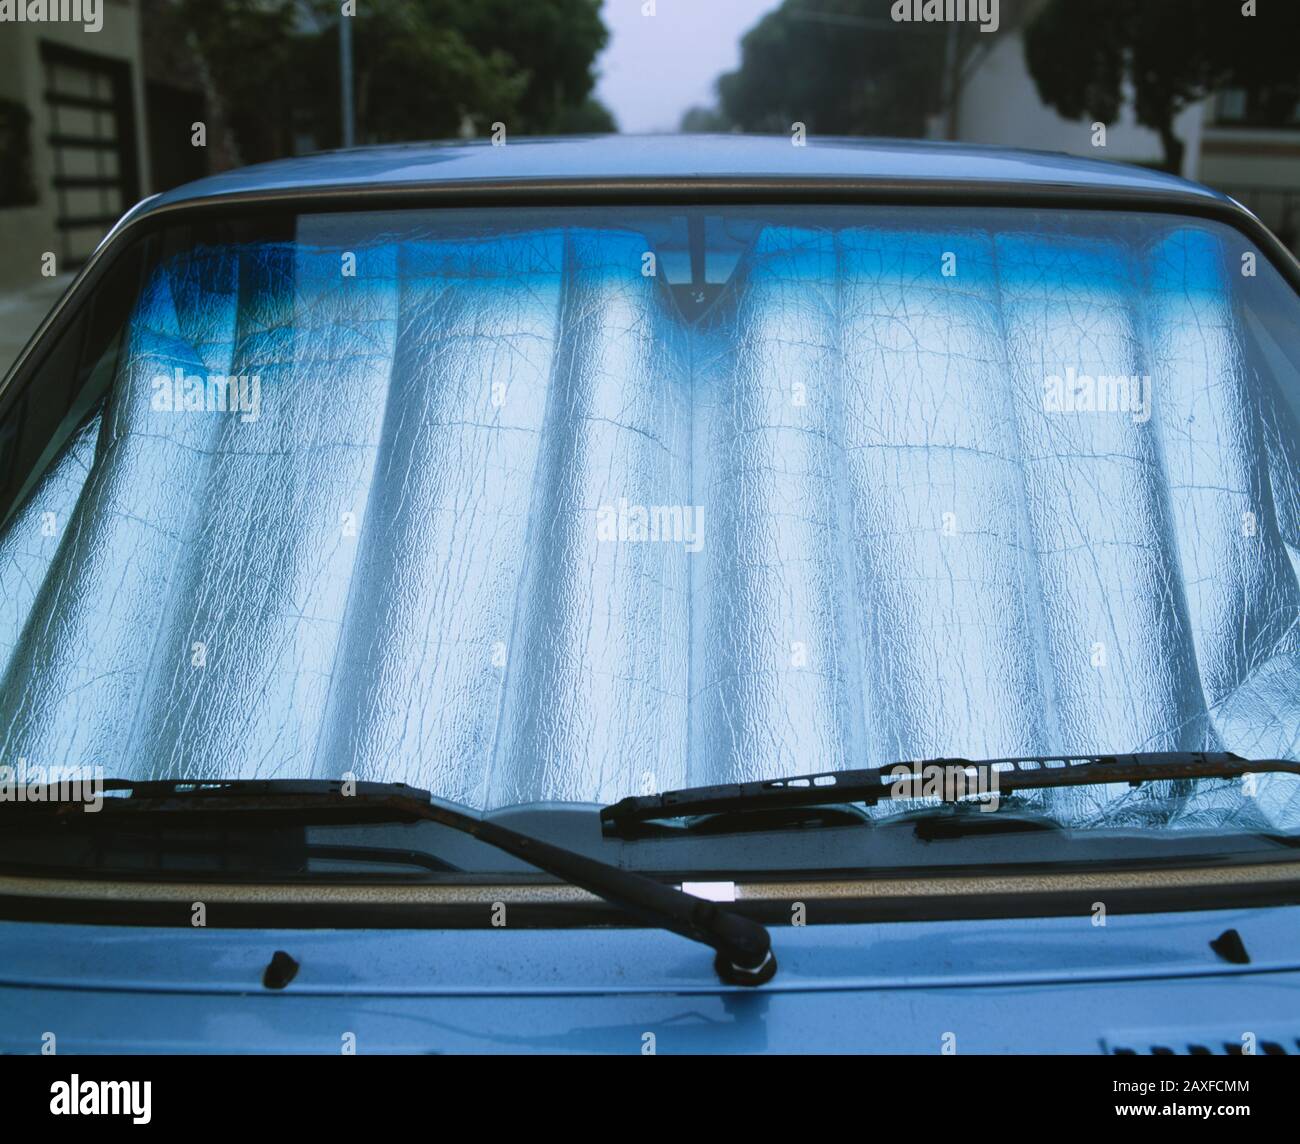 Gros plan d'un réflecteur solaire derrière le pare-brise d'une voiture, Californie, États-Unis Banque D'Images